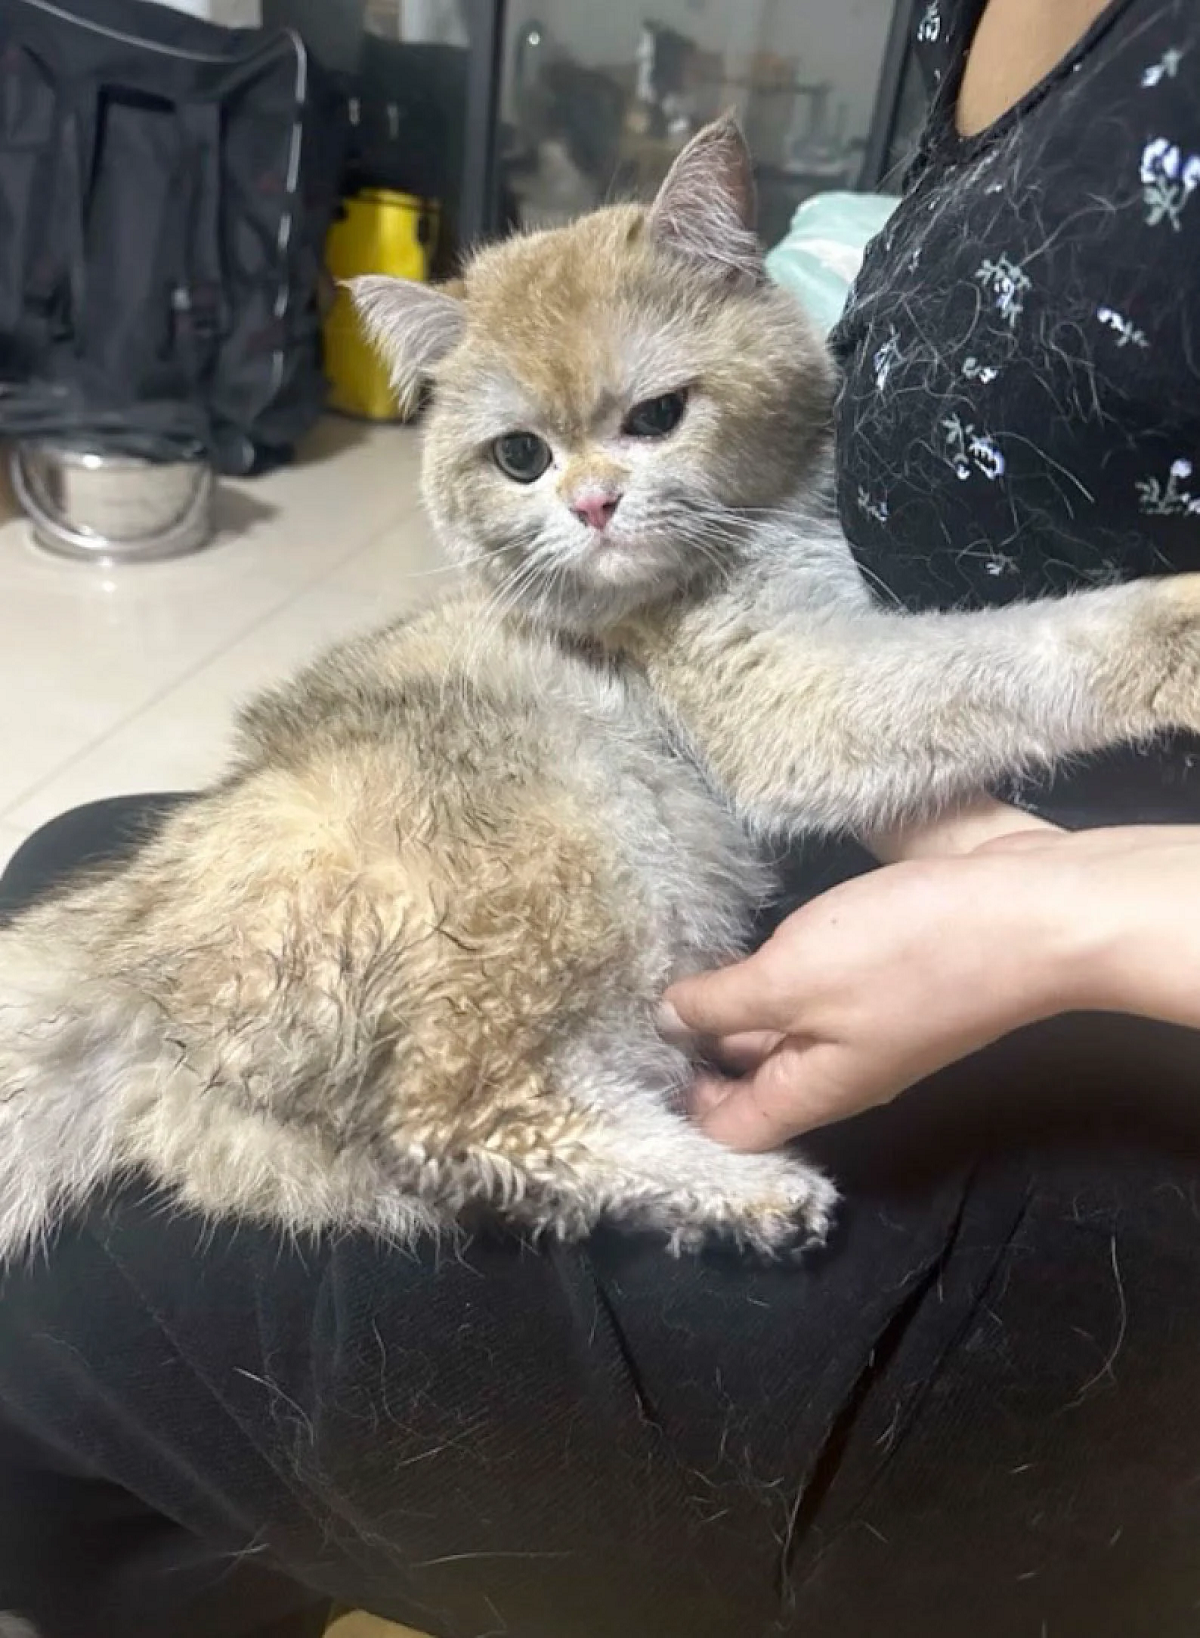 VIRAL: gato causa prejuízo de mais de R$ 70.000 ao ligar fogão e incendiar imóvel na China